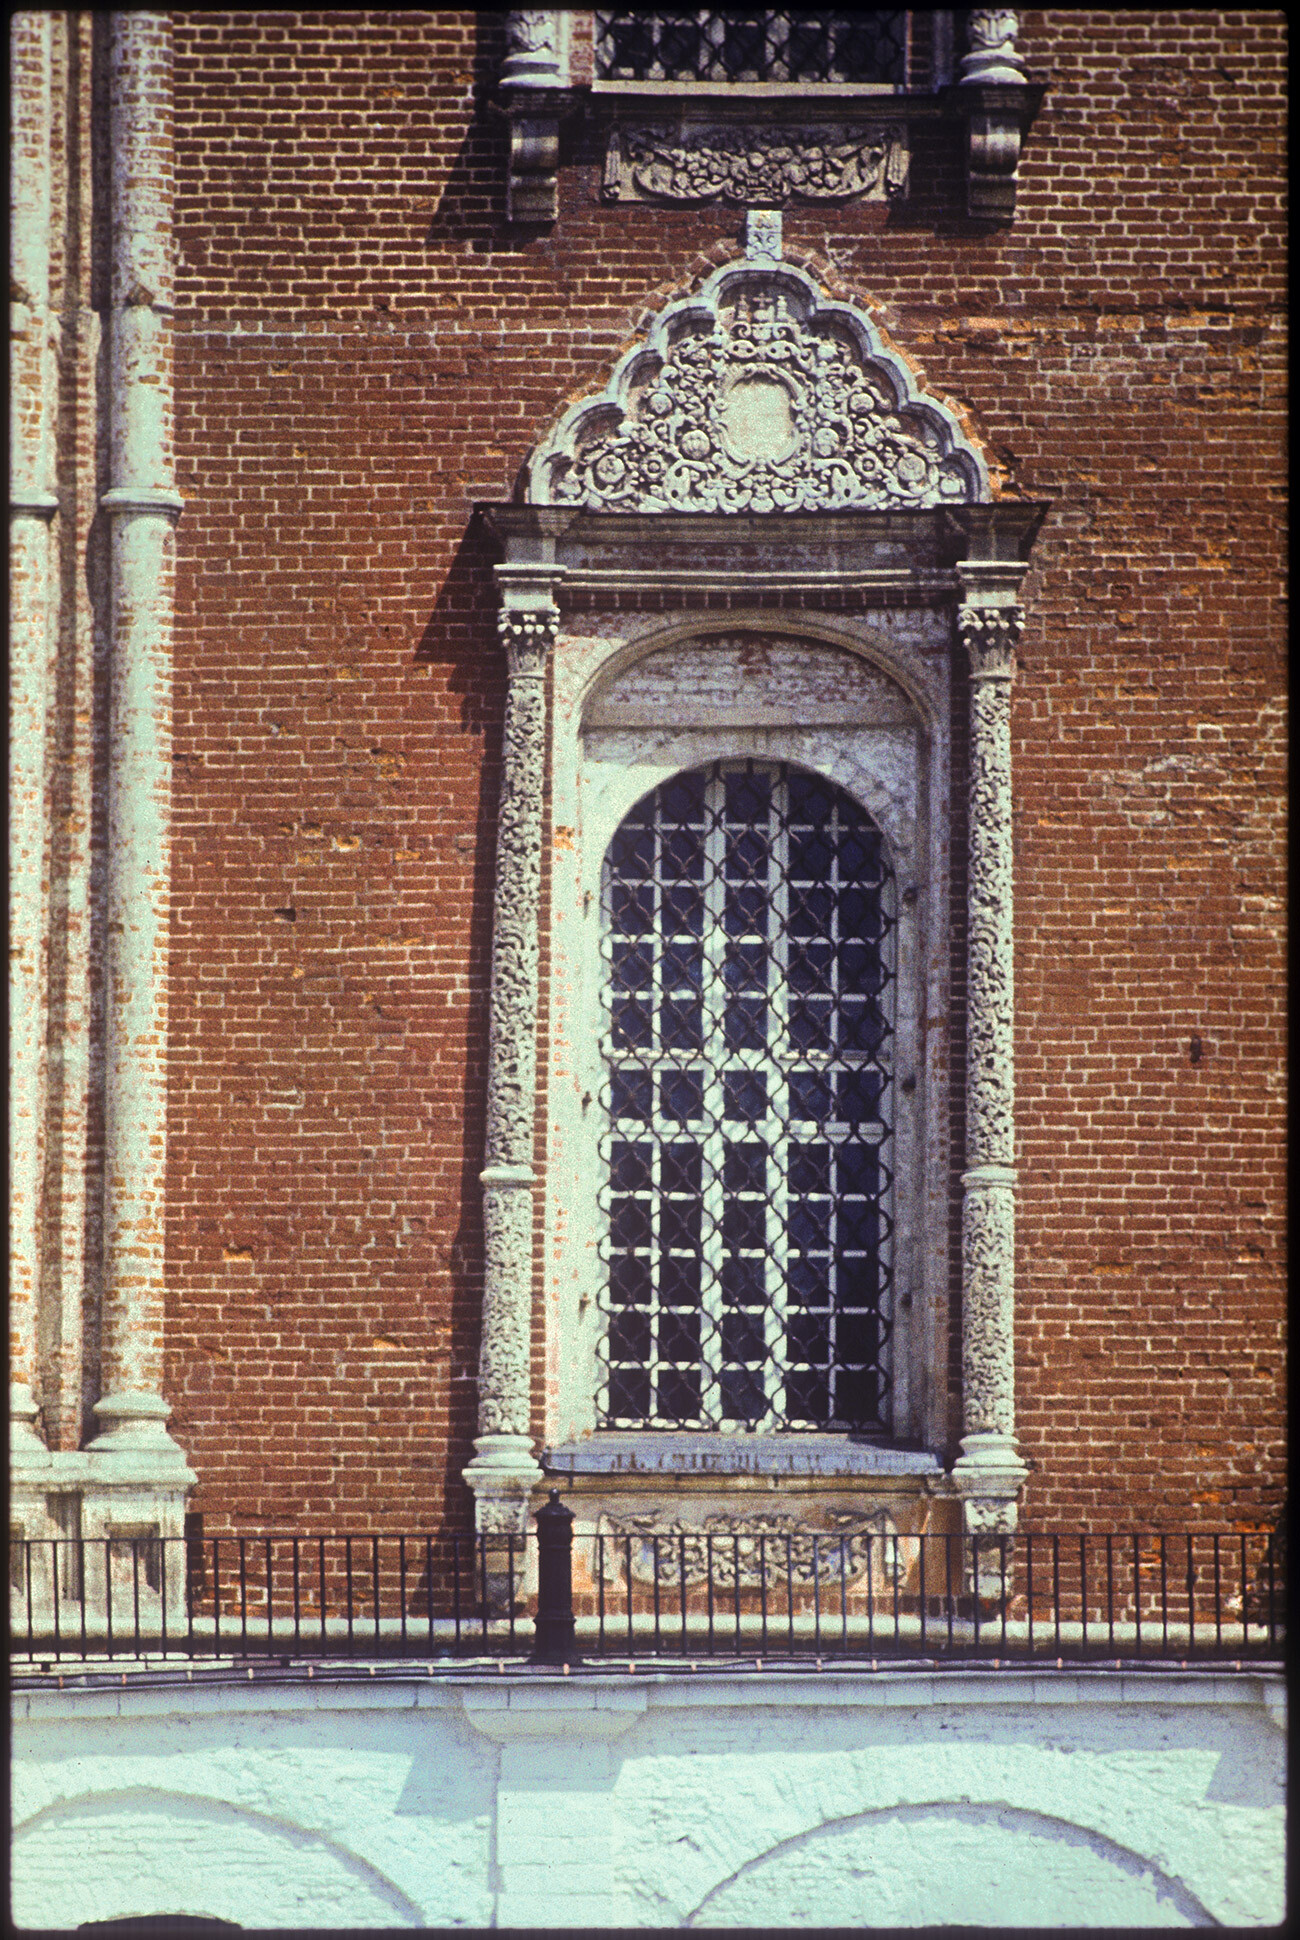 Kremlin de Riazan. Cathédrale de la Dormition-de-la-Vierge. Façade ouest, fenêtre à décor sculpté en pierre calcaire